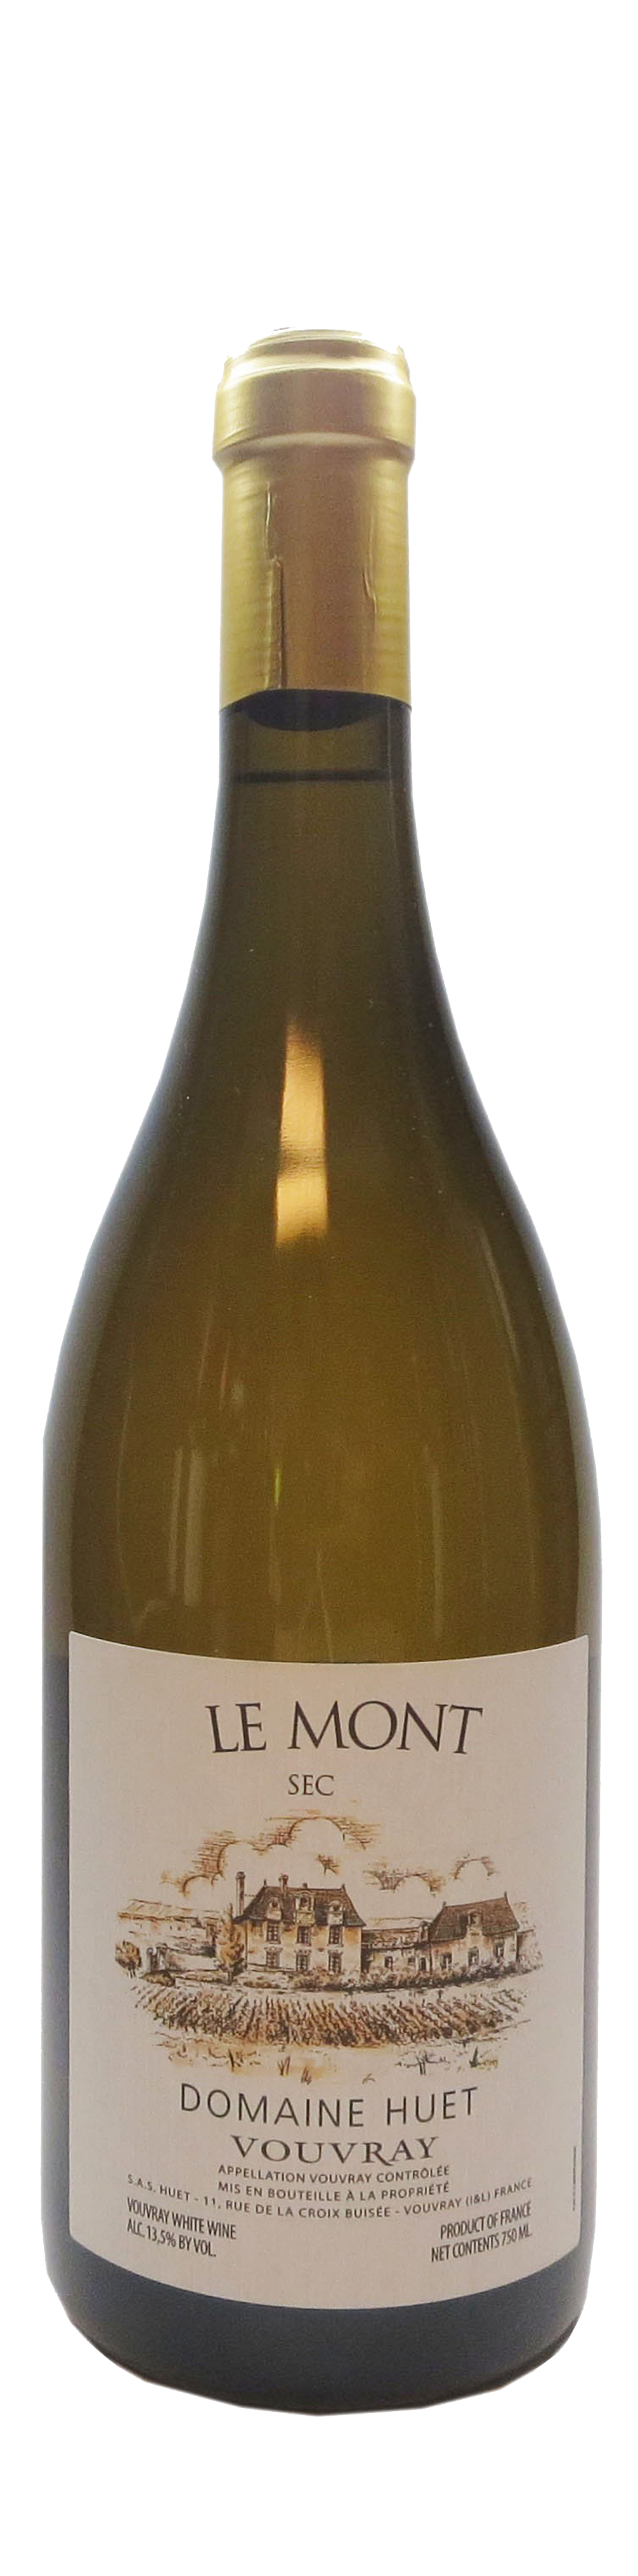 Bottle shot of 2014 Vouvray Le Mont Sec